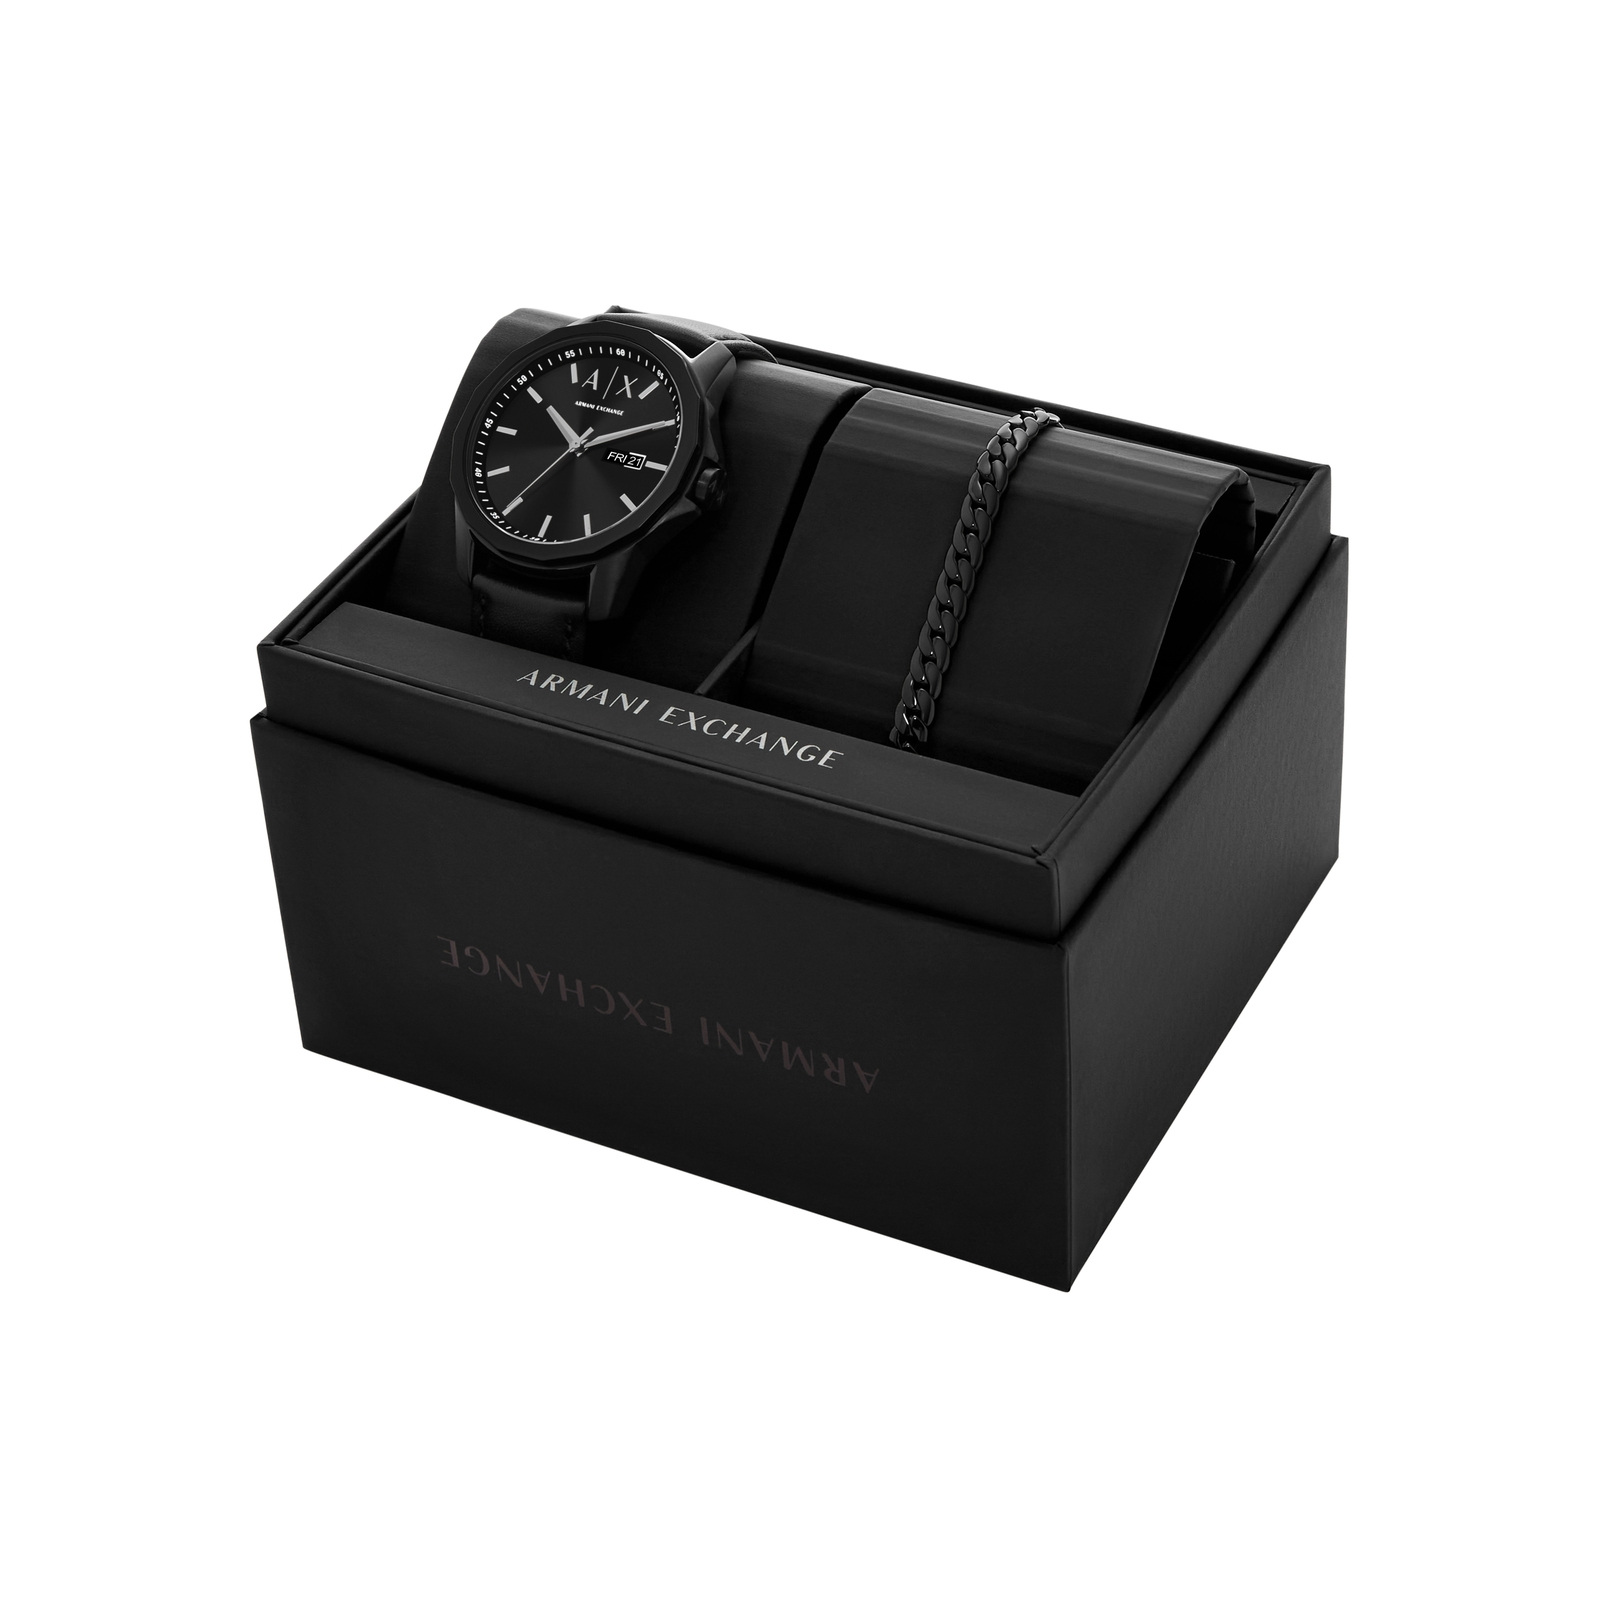 Armani Exchange Black Watch AX7147SET